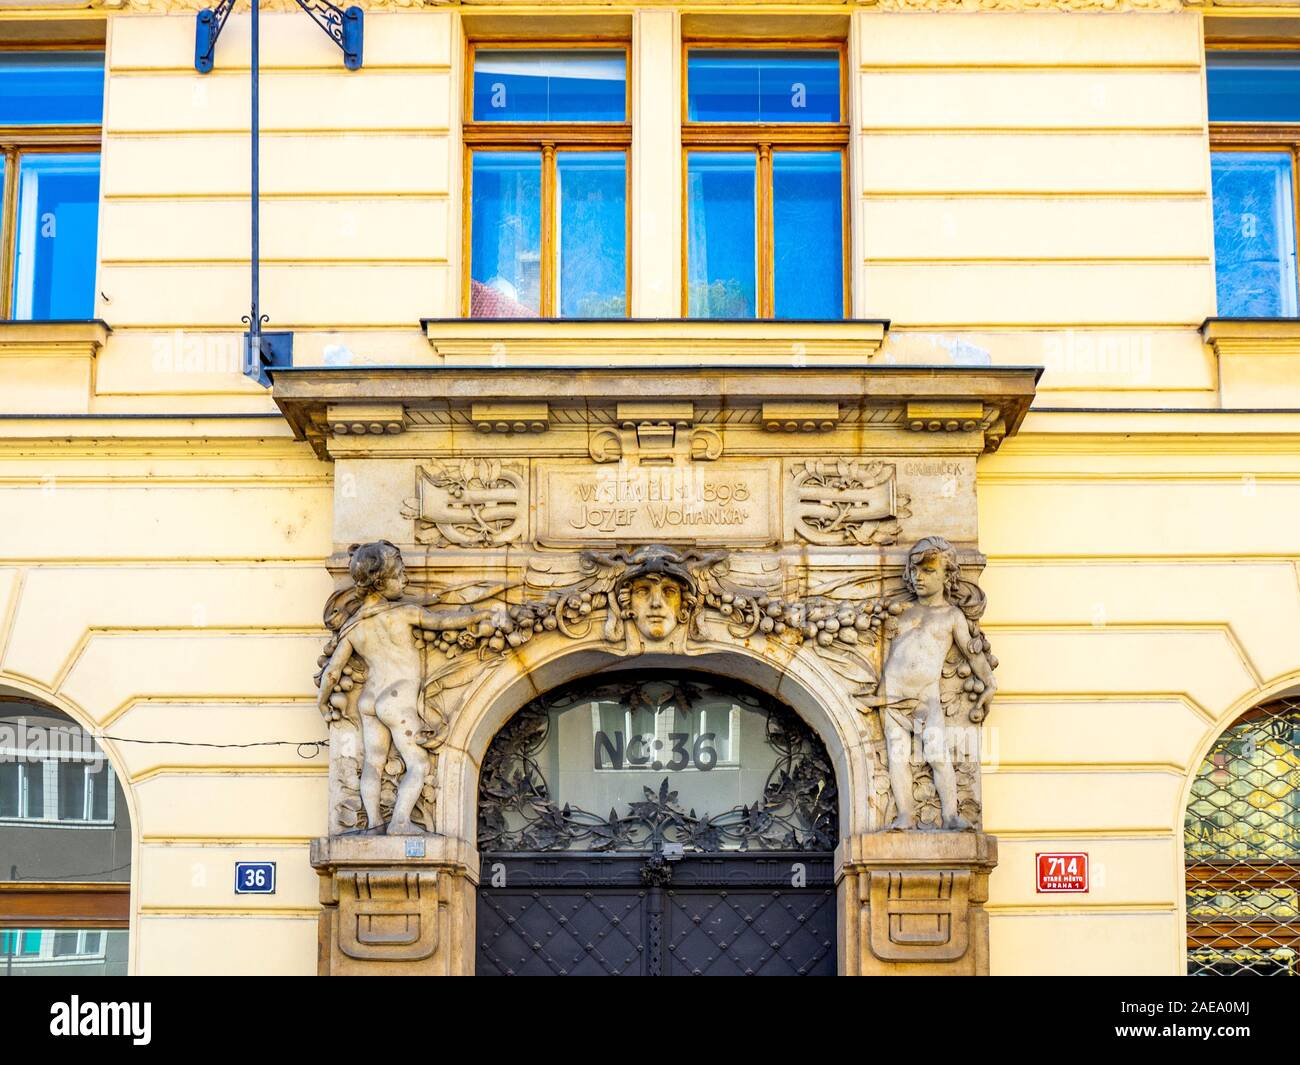 Entrance to Josef rytíř Wohanka's house No. 714 / I in Dlouhá třída 36 Old Town Prague Czech Republic. Stock Photo